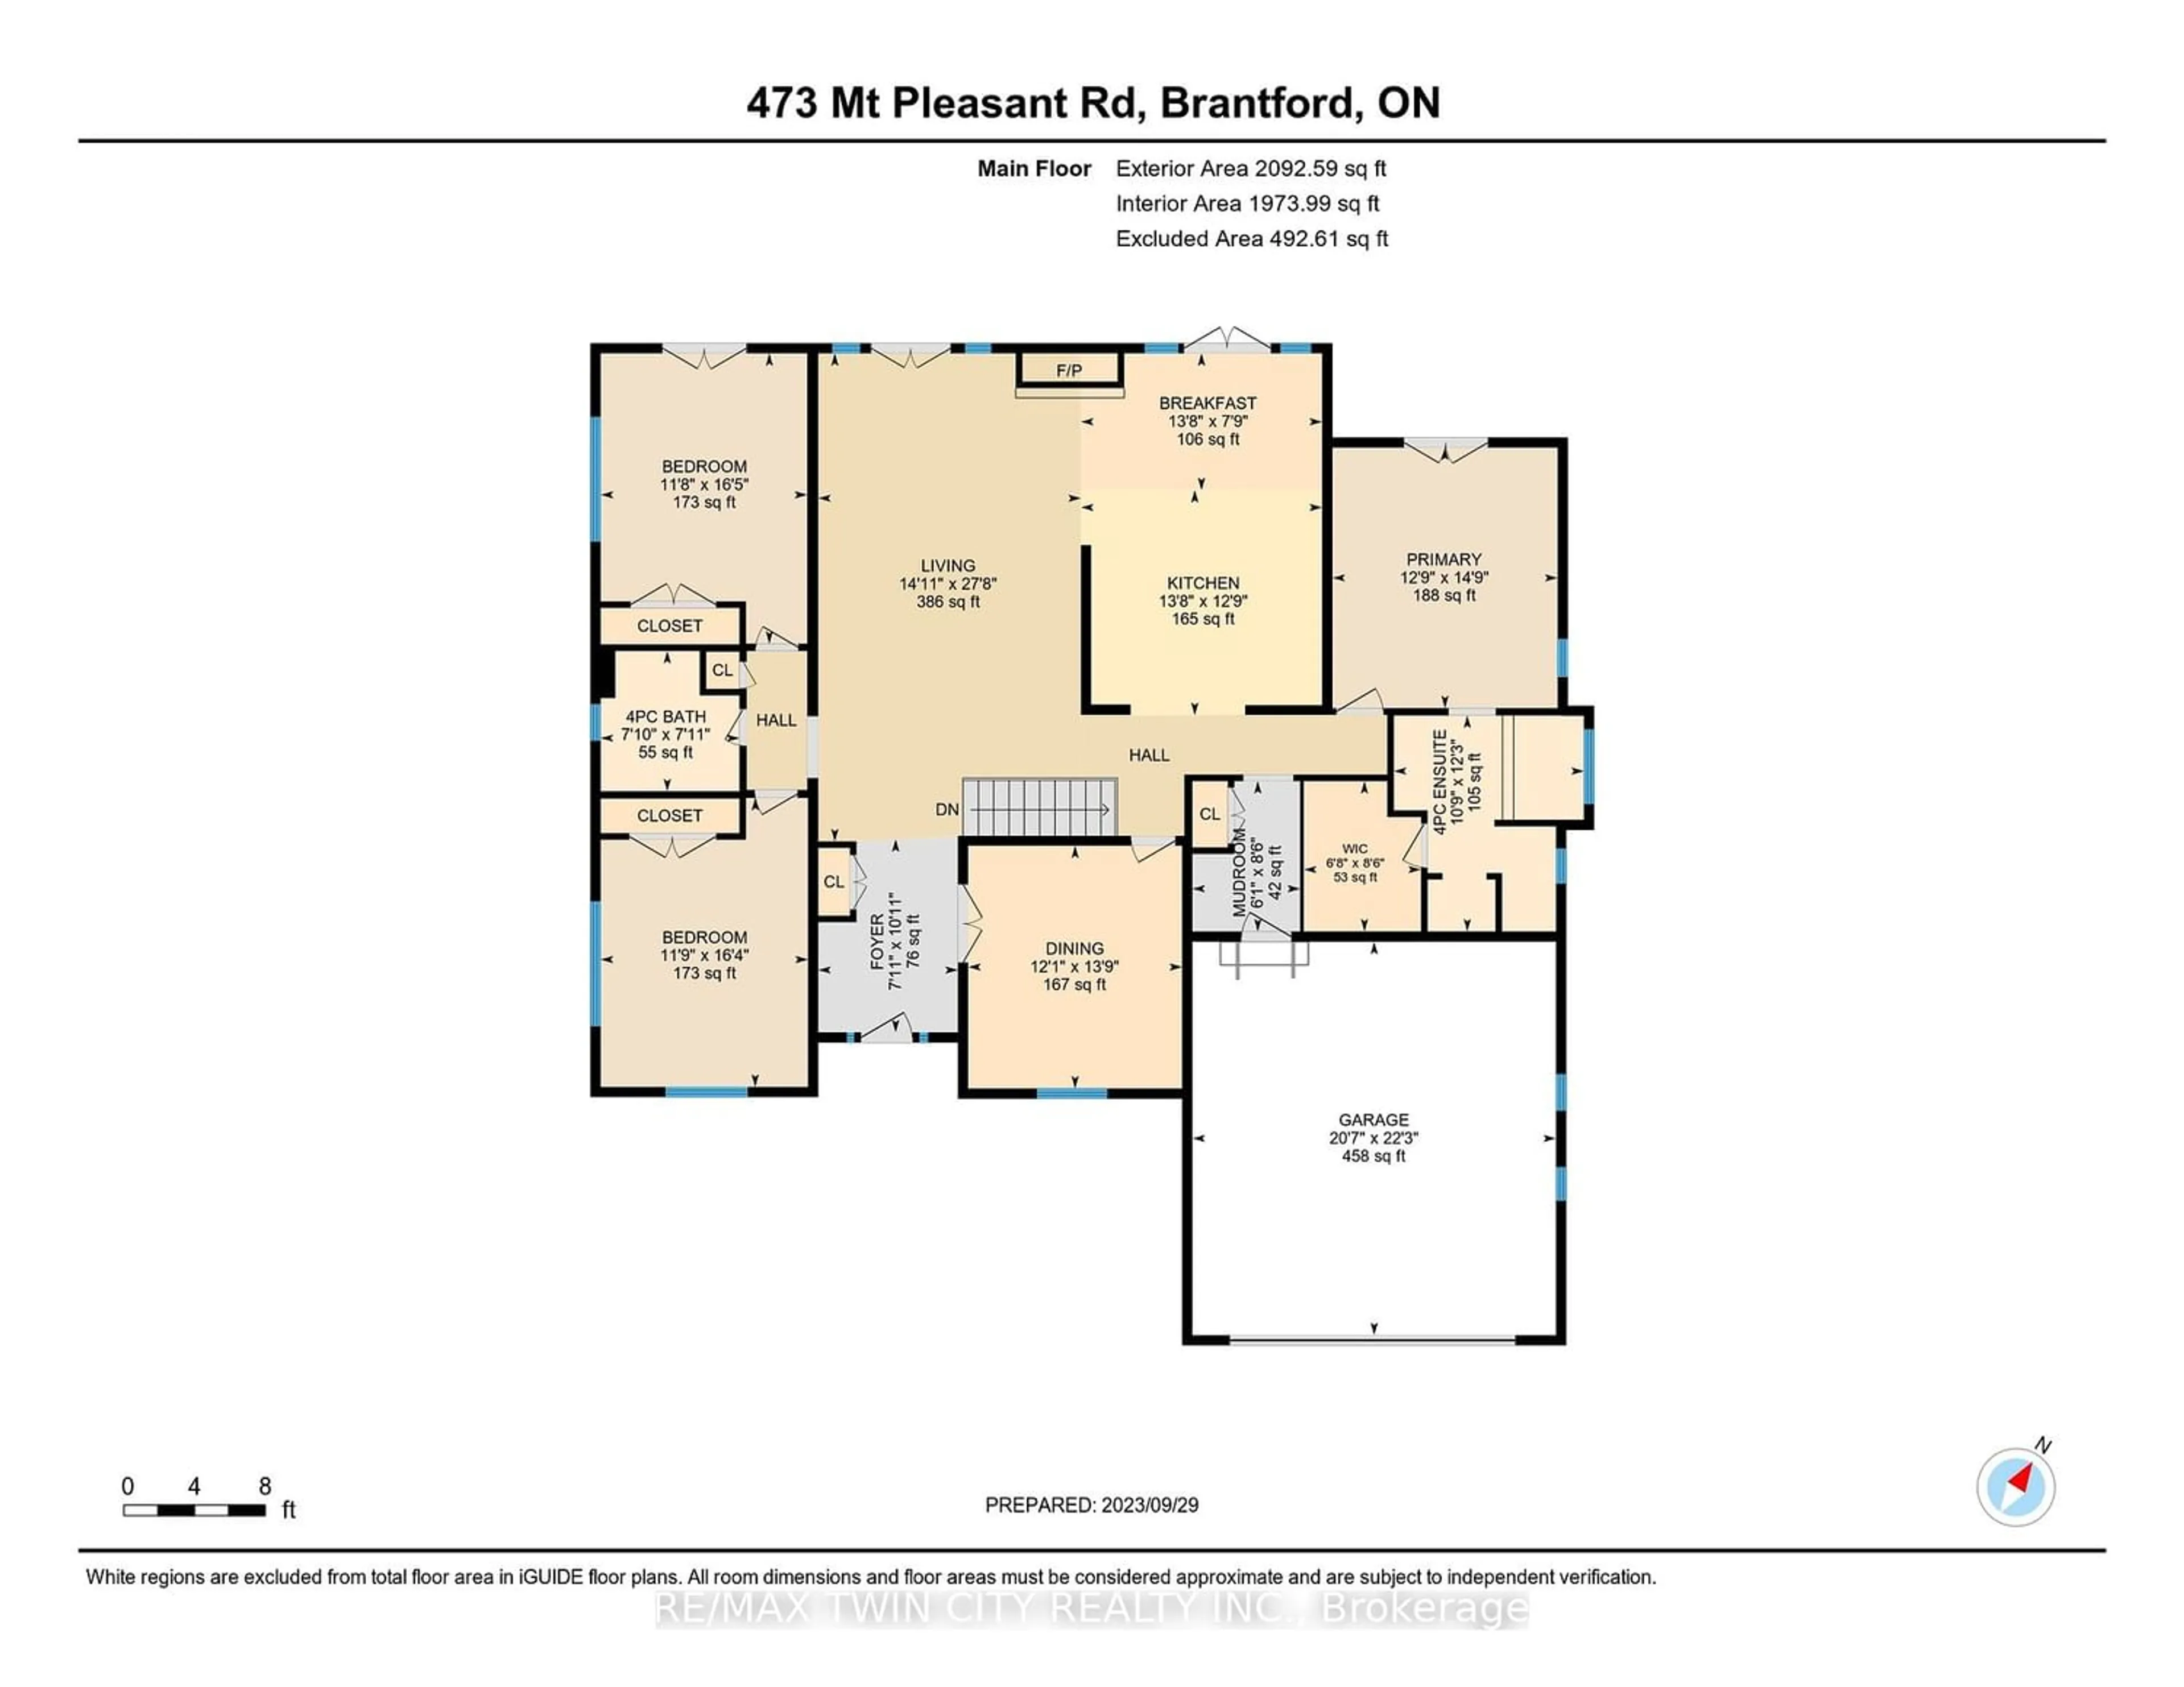 Floor plan for 473 Mount Pleasant Rd, Brantford Ontario N3T 5L5